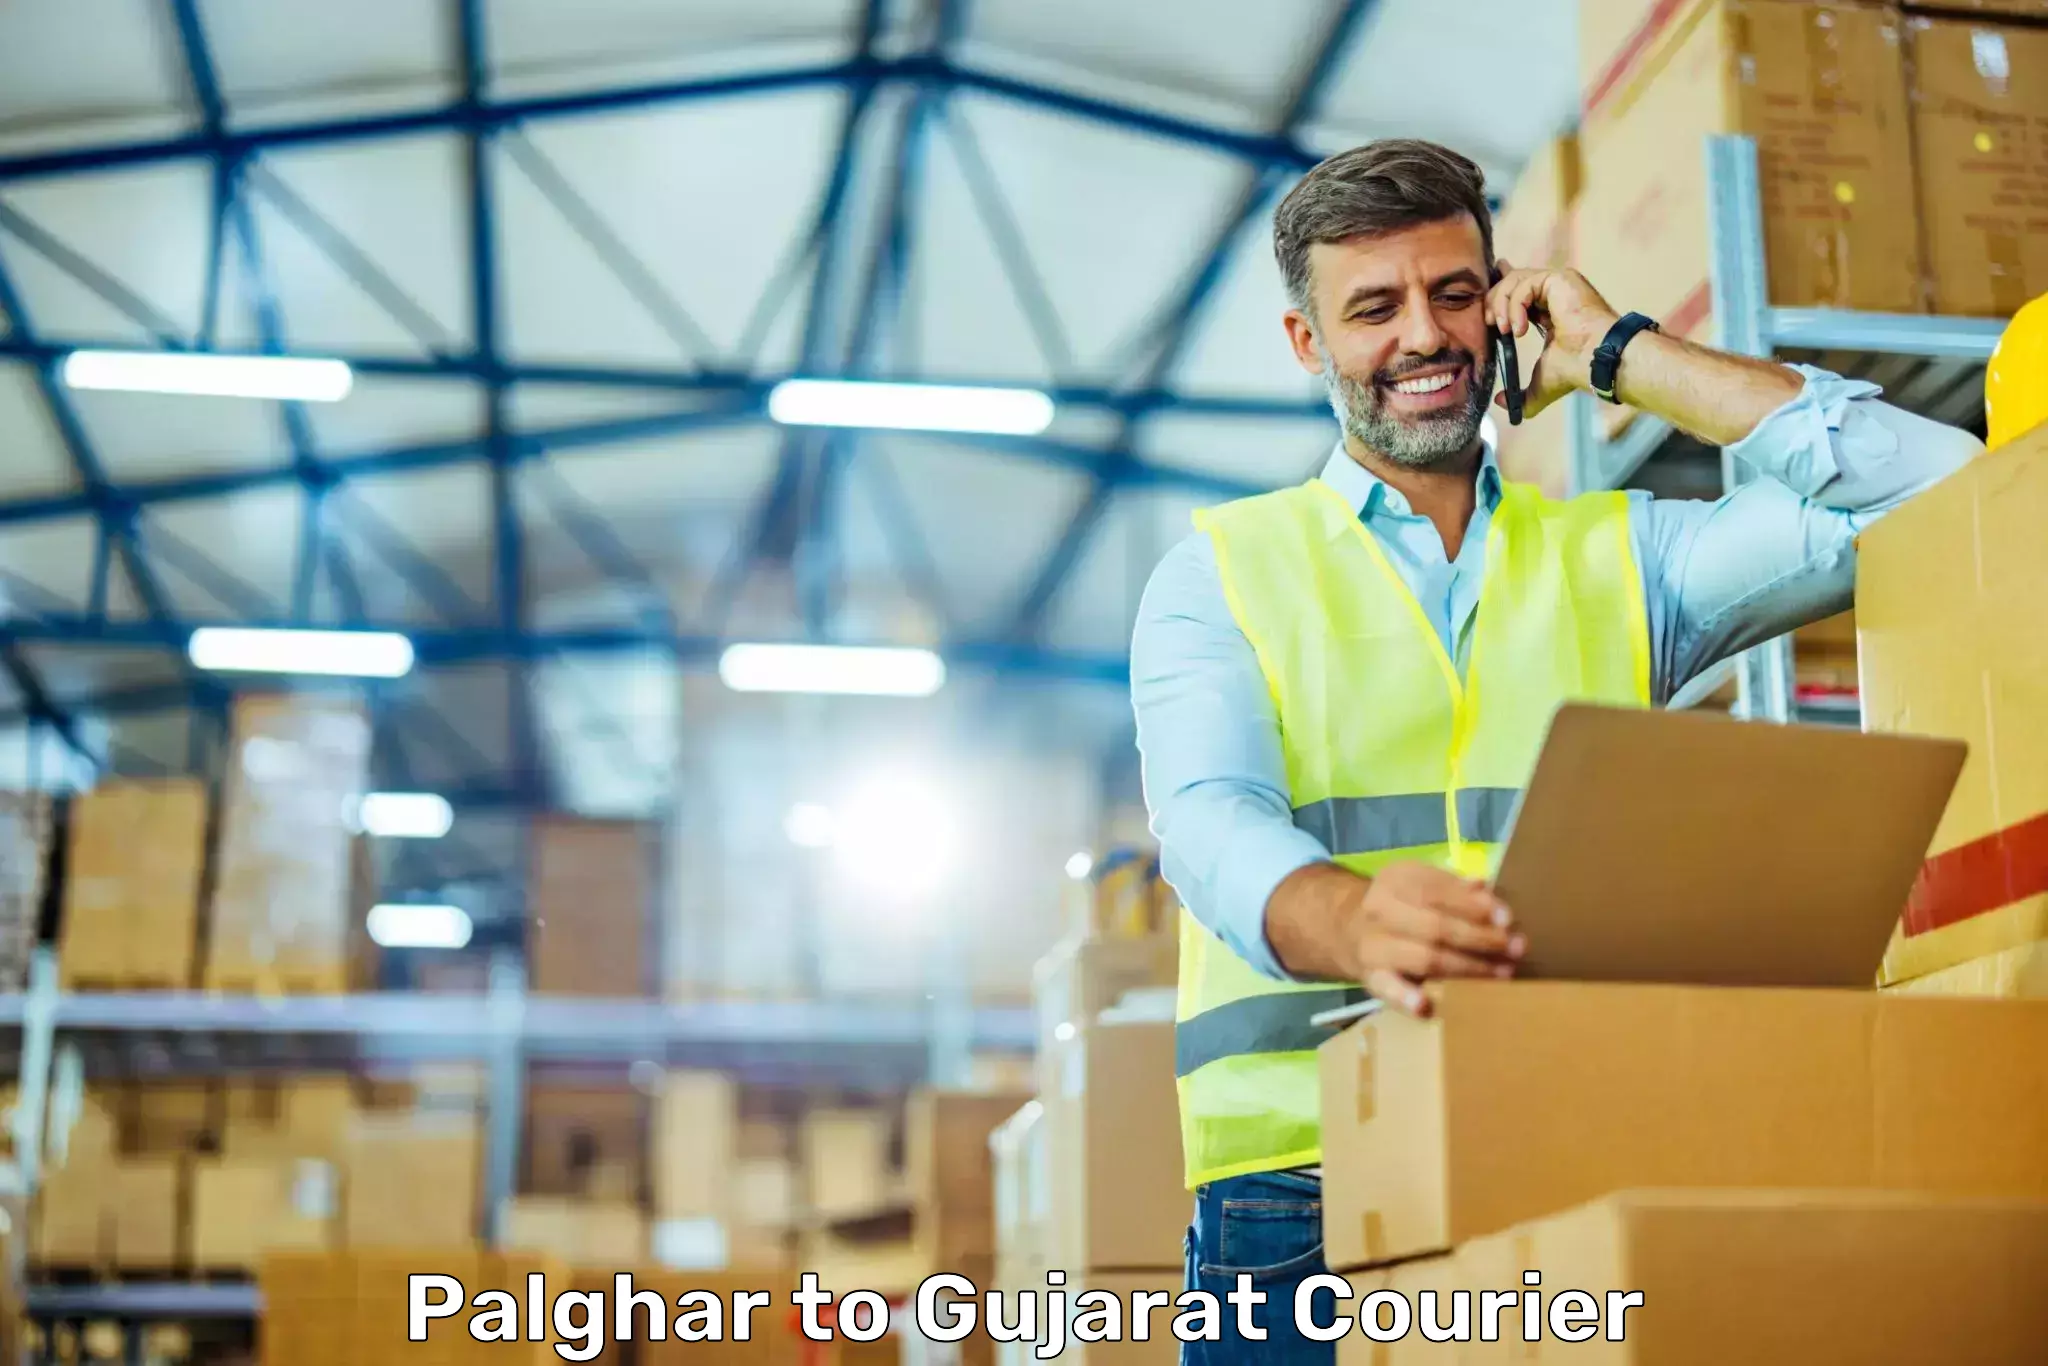 Quality courier services Palghar to Vadodara